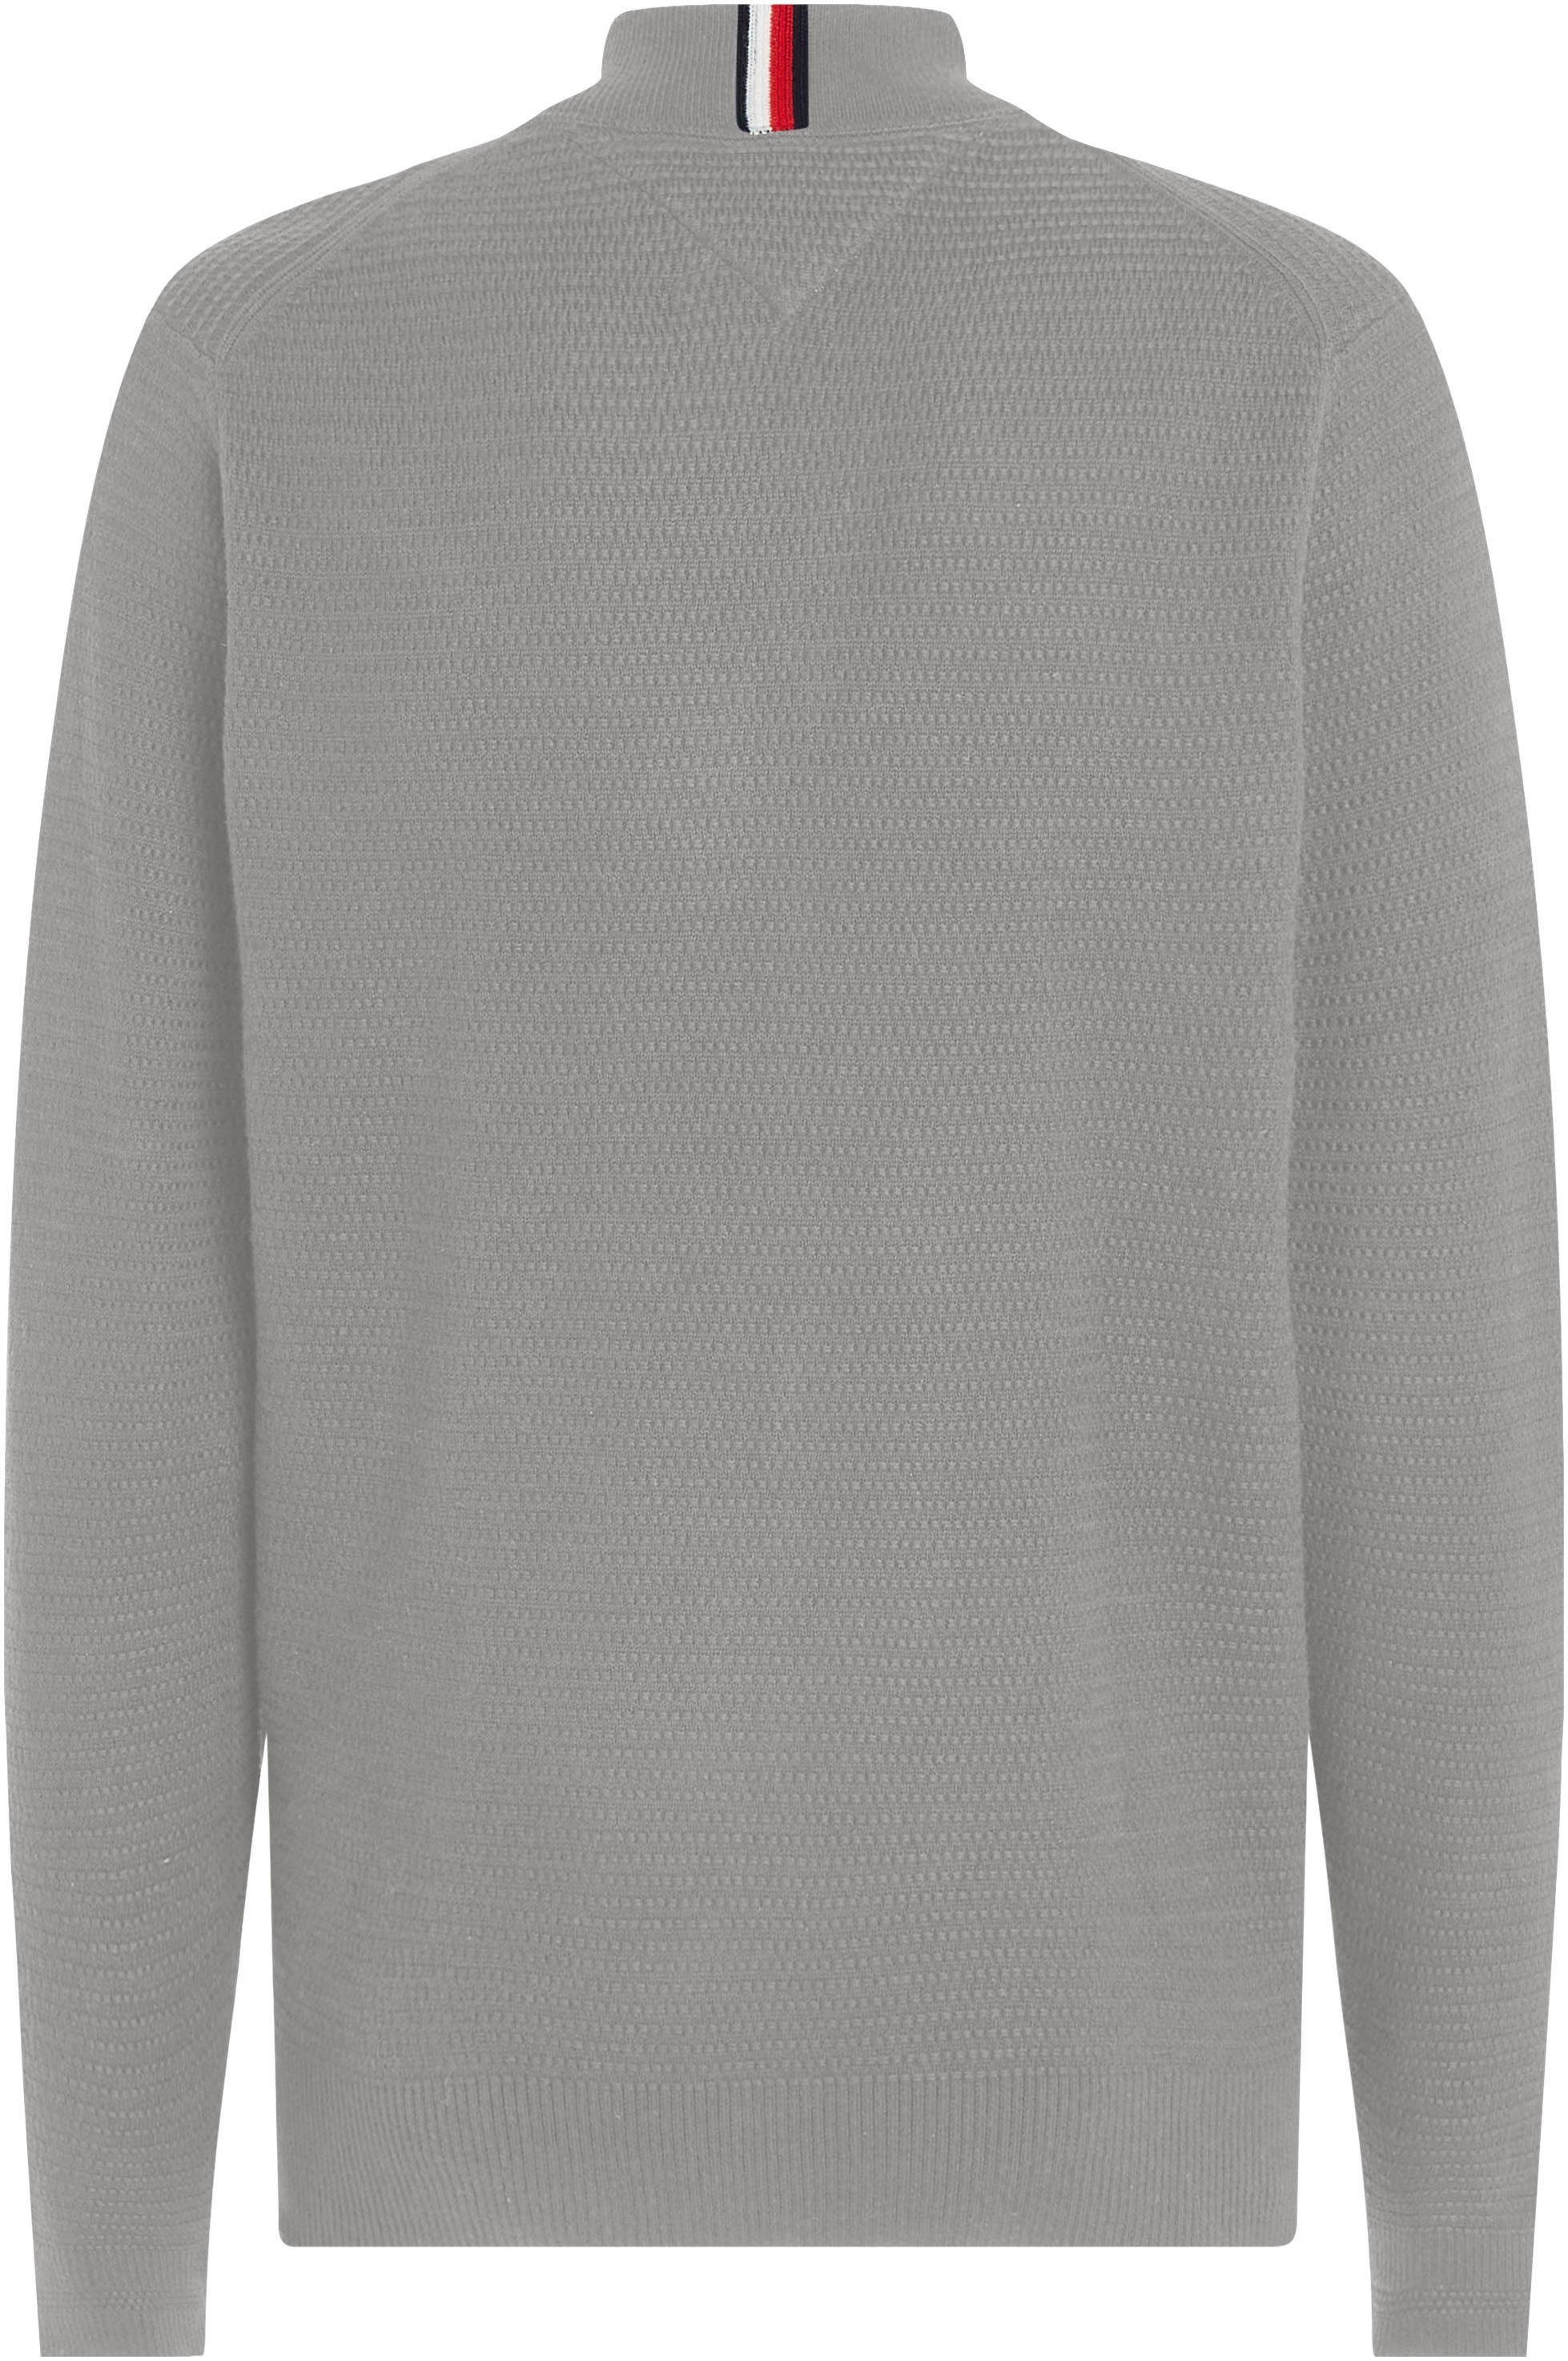 Tommy Hilfiger Sweatshirt ZIP INTERLACED Optik in BASEBALL Medium Heather THROUGH Grey strukturierter